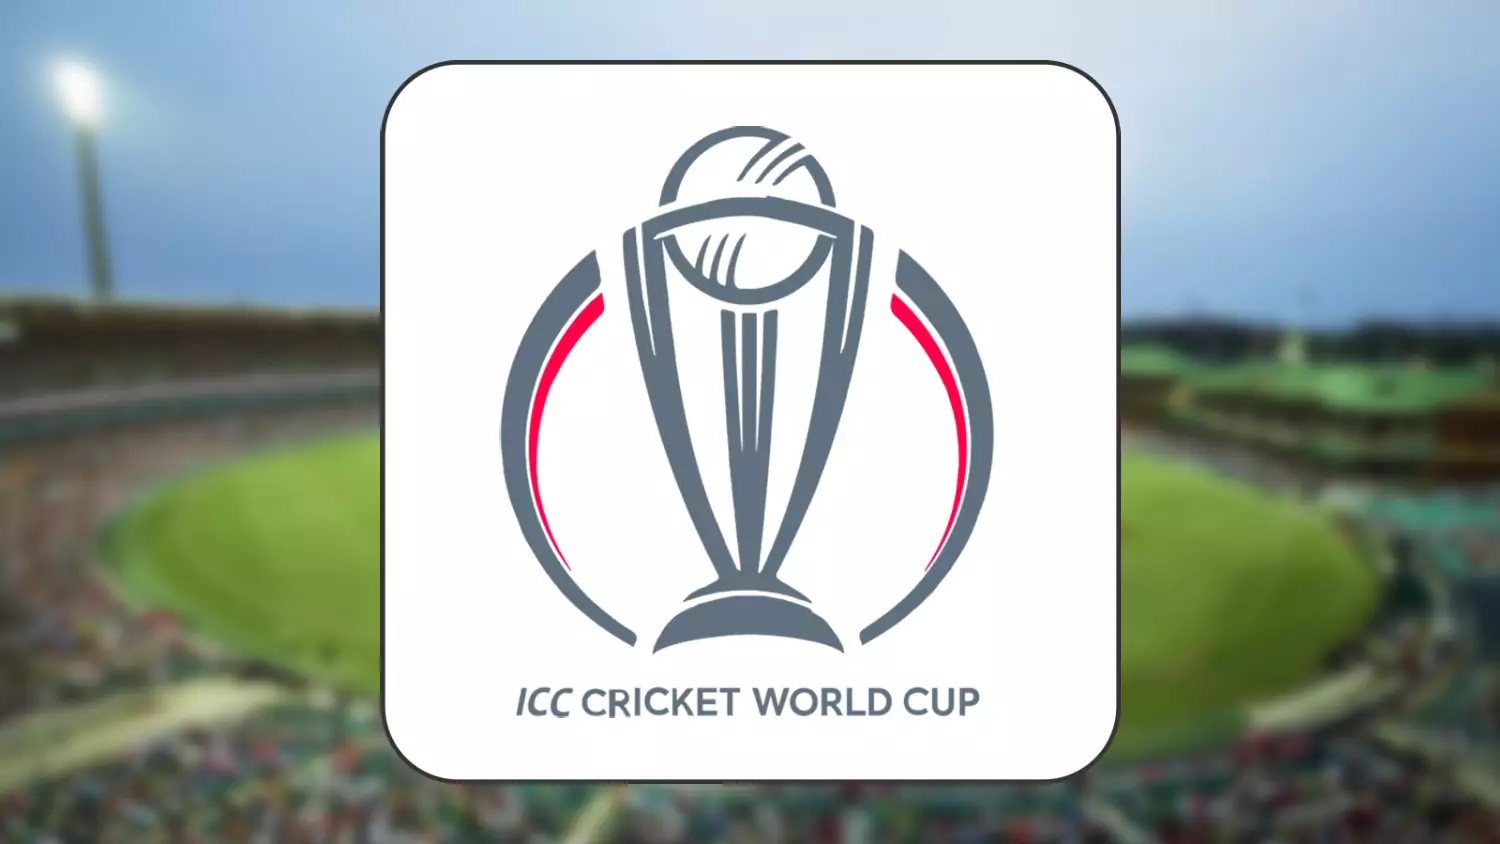 आईसीसी क्रिकेट विश्व कप के विजेता को अगले चार वर्षों के लिए चैंपियन माना जाता है।